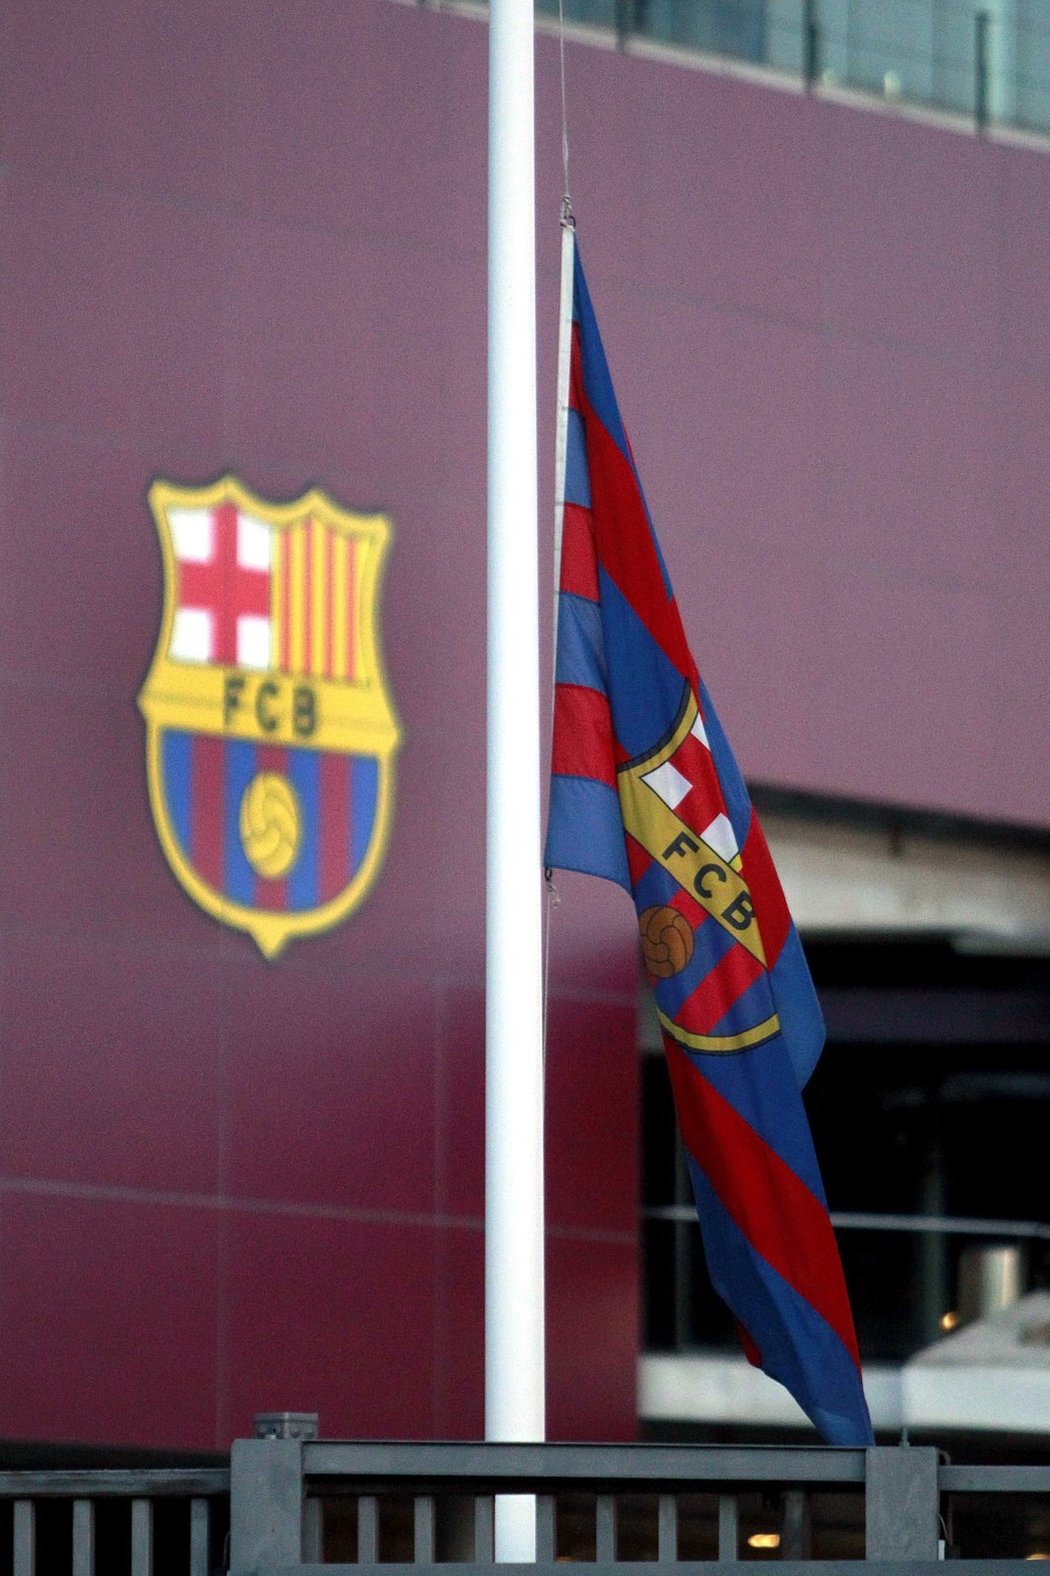 Barcelona truchlí kvůli úmrtí bývalého kouče Tita Vilanovy, na důkaz smutku klub stáhl vlajky na půl žerdi